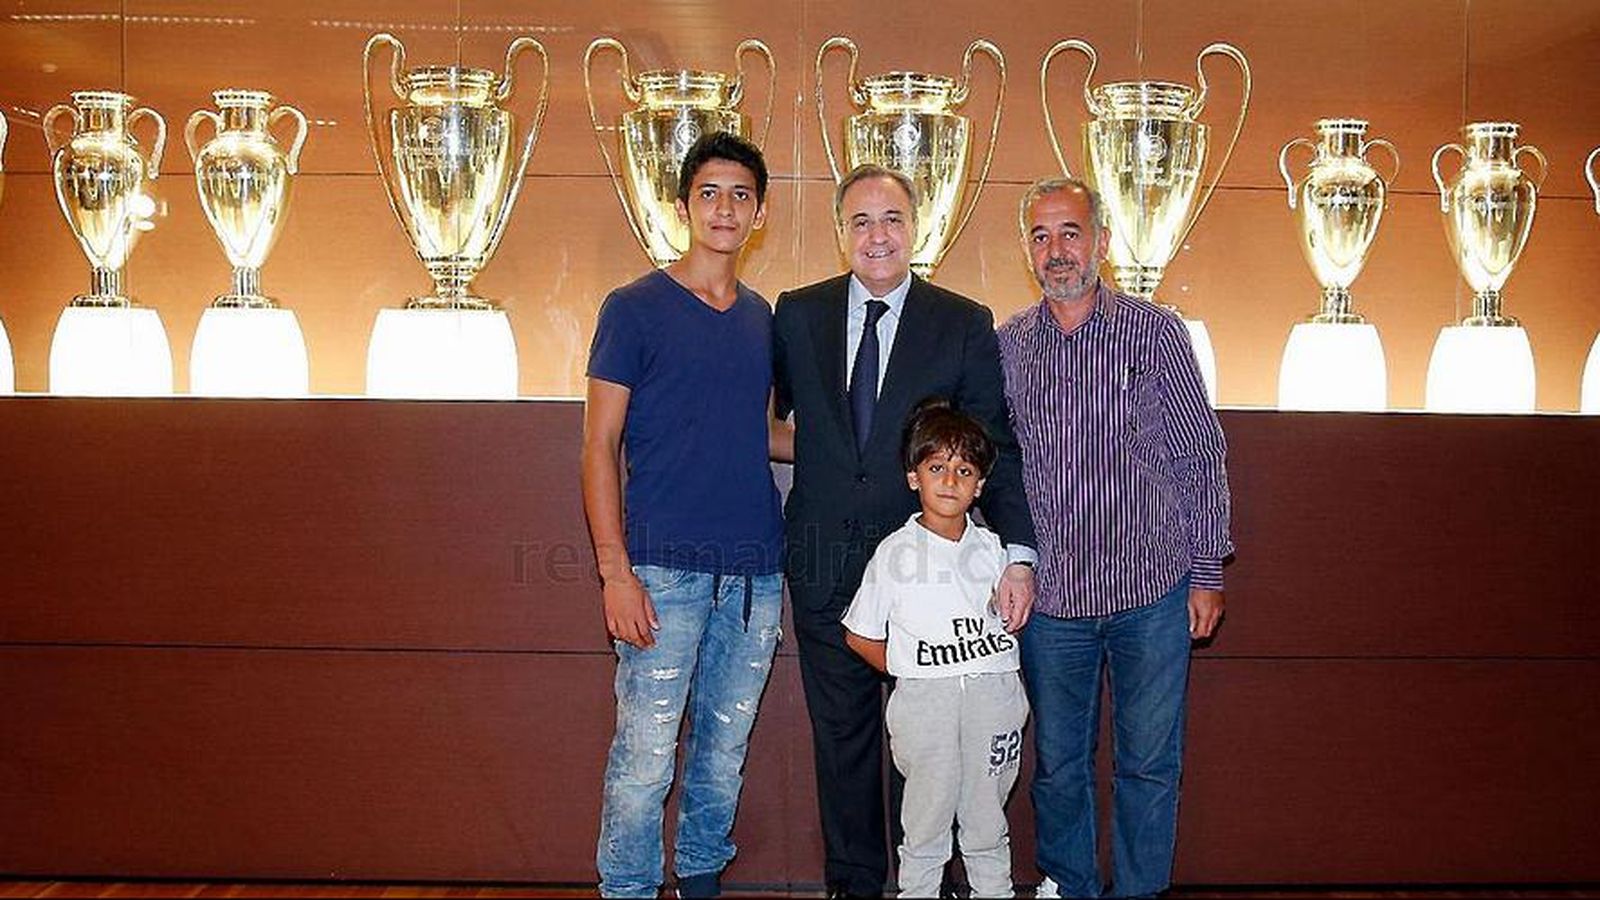 Foto: En la imagen, Florentino, Osama y su familia ante las copas de Europa ganadas por el Real Madrid (realmadrid.com)